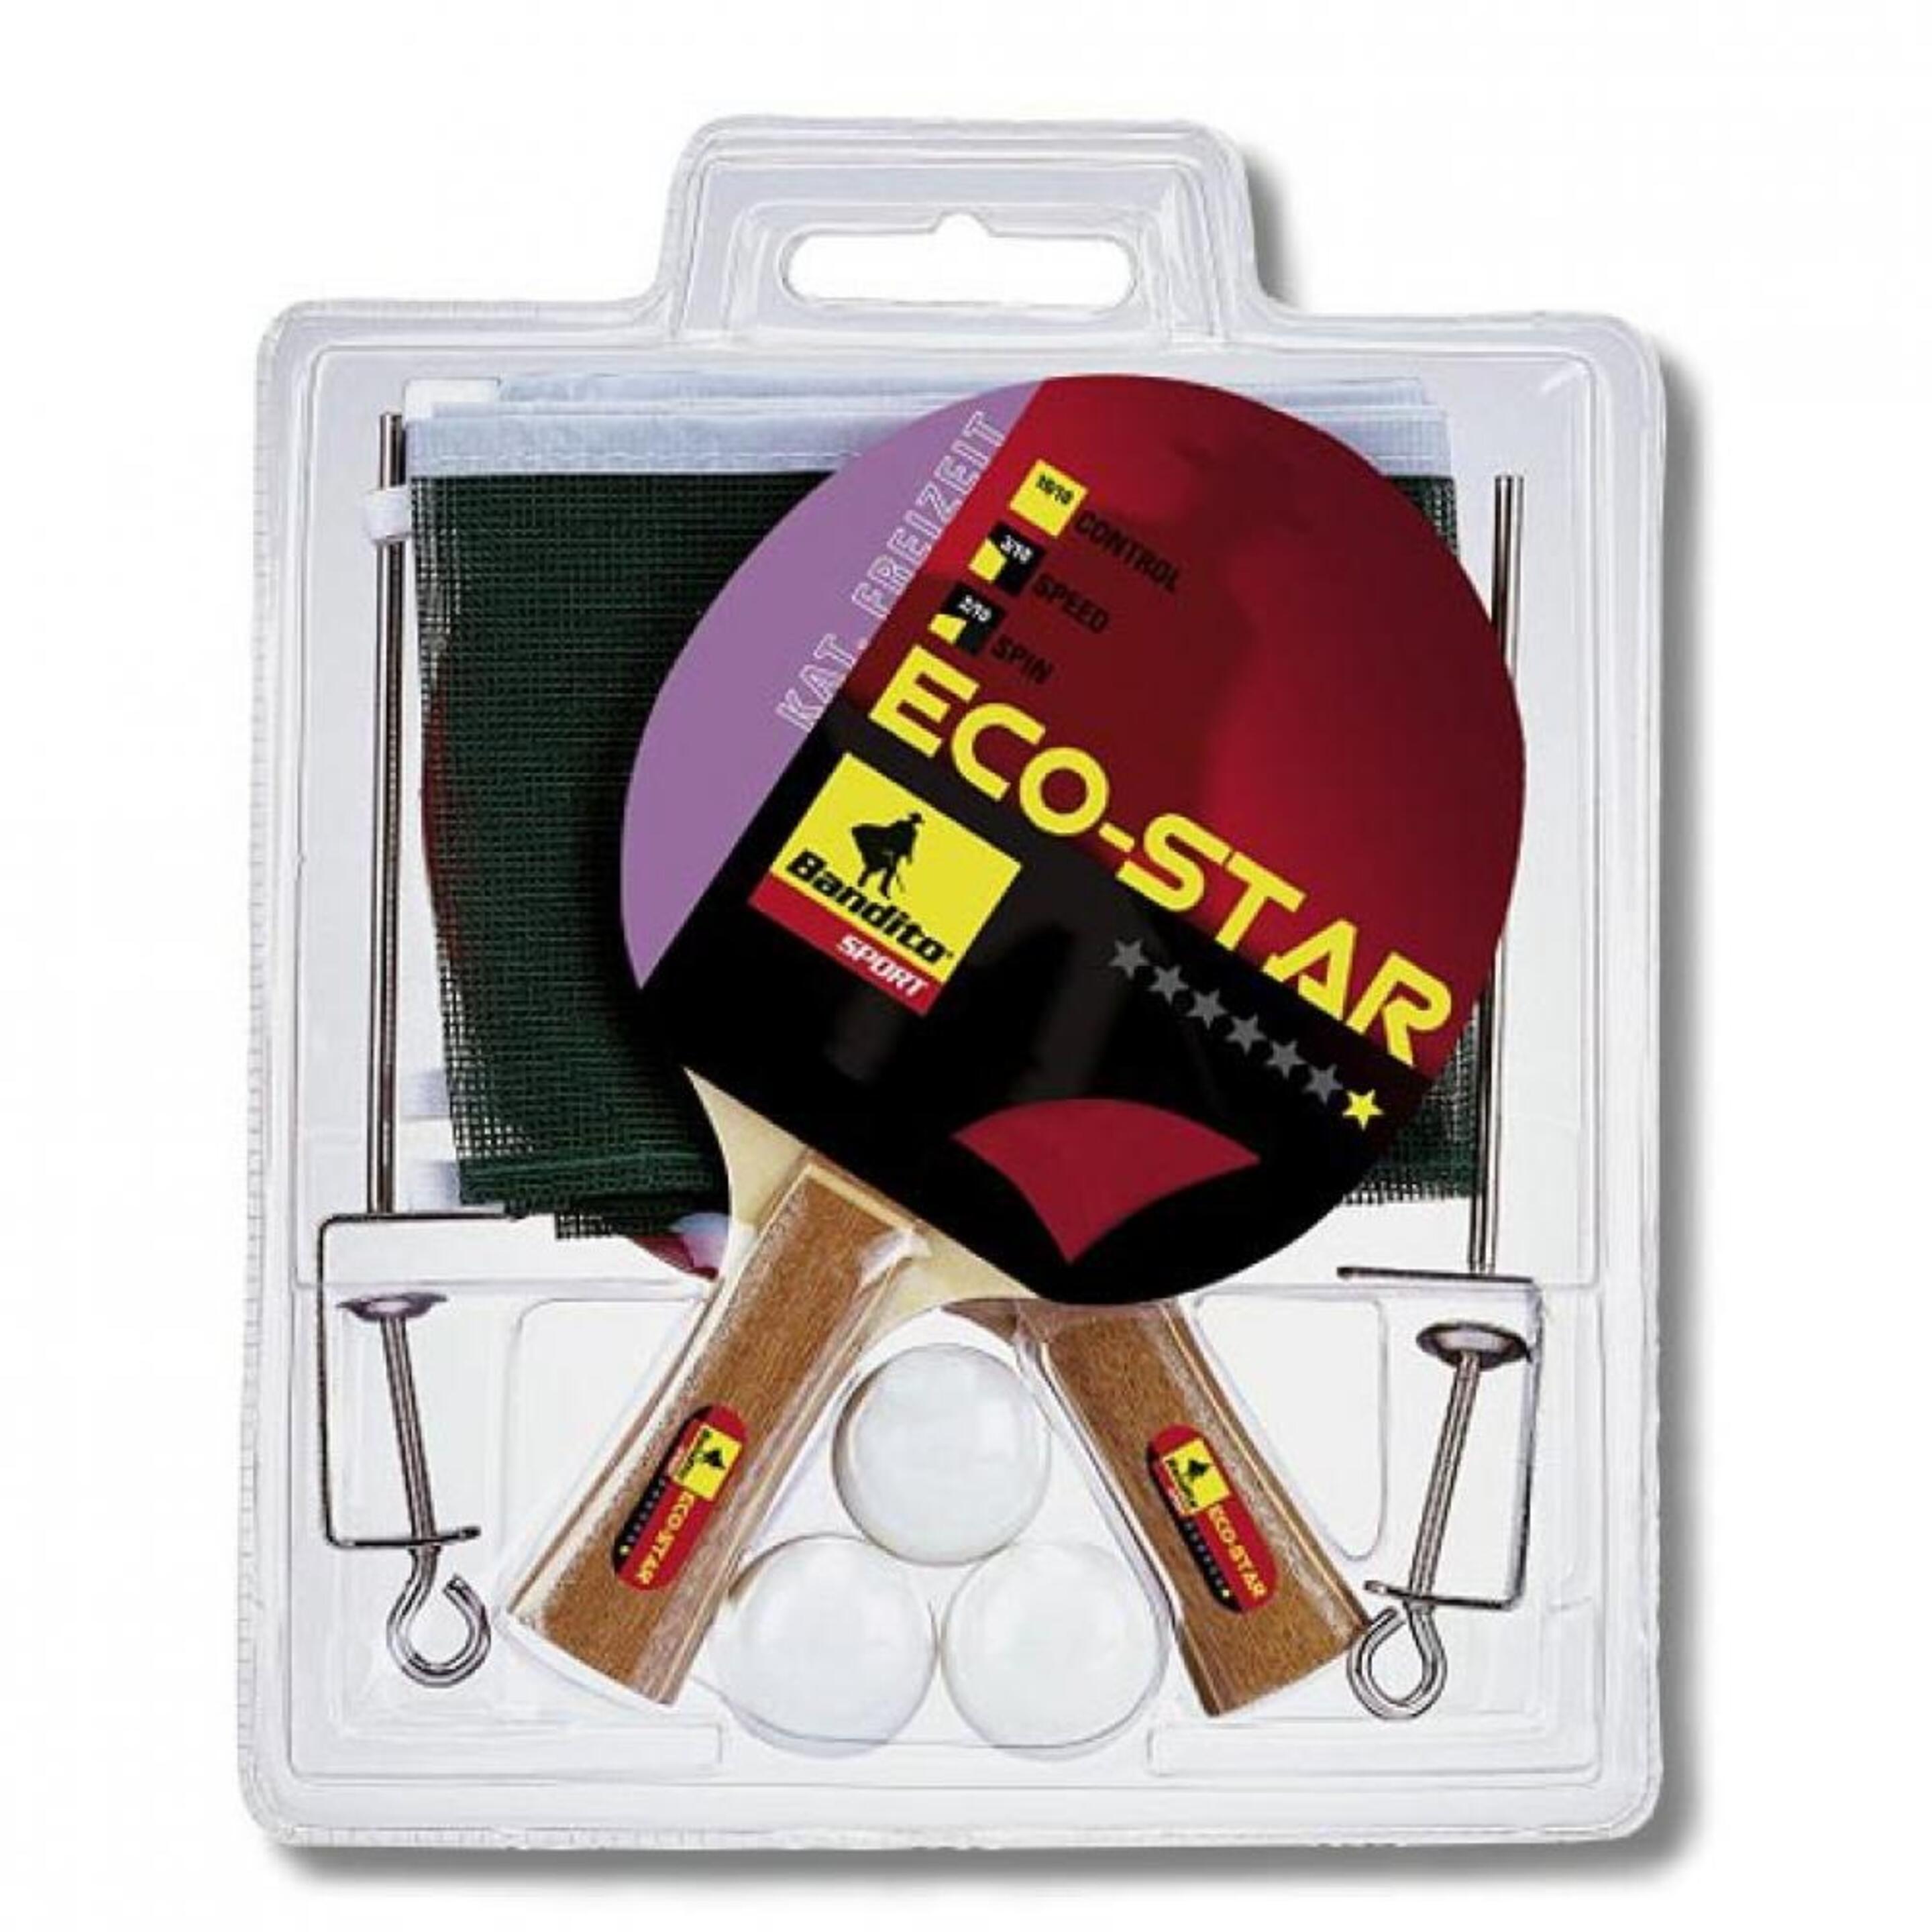 Pack 2 Pala Ping Pong + 3 Bolas + Red Bandito Sport Eco-star 4110.01